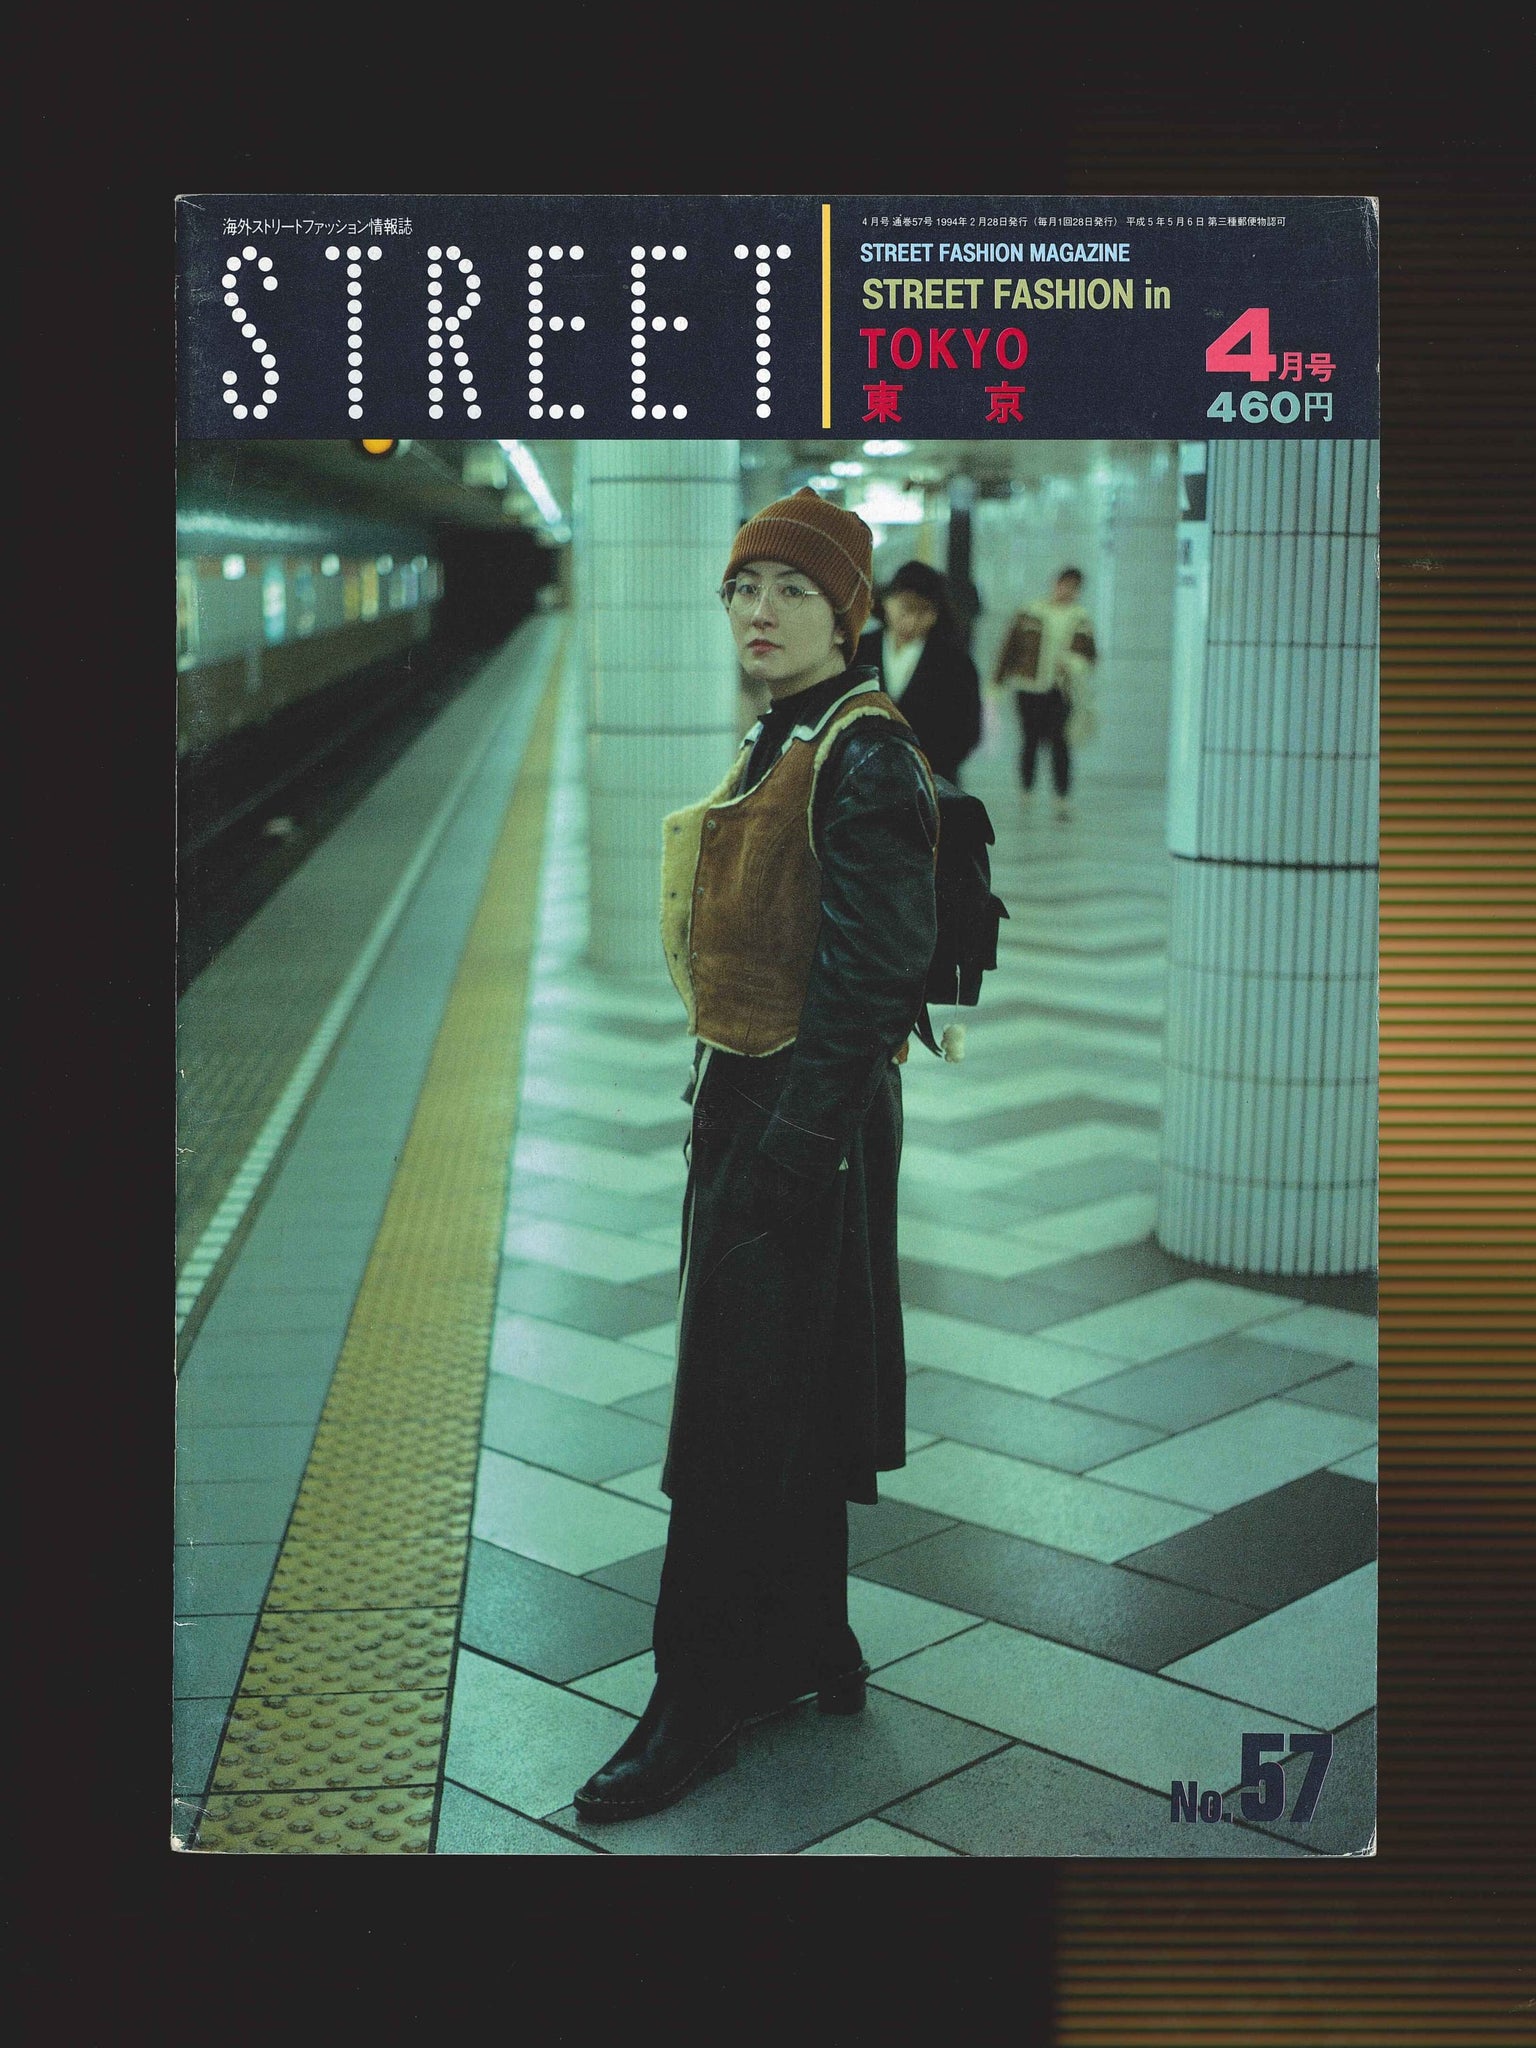 STREET magazine no. 57 / april 1994 / street fashion in tokyo / Shoichi Aoki